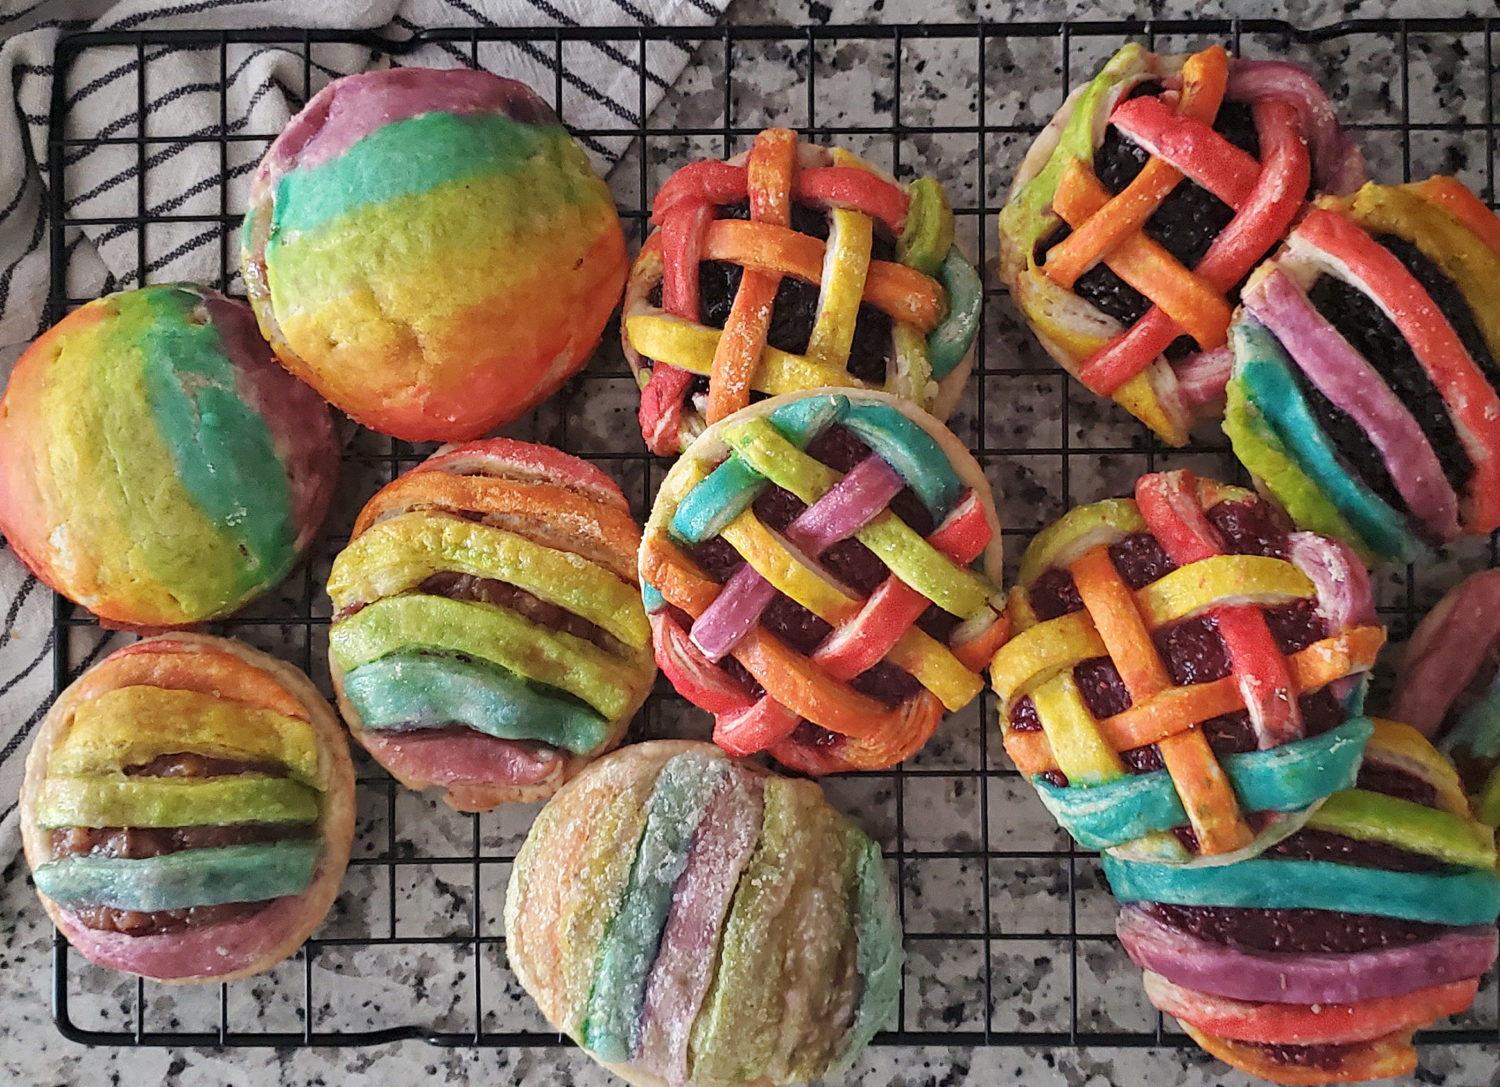 Feiern Sie Ihre Liebe und Ihren Stolz mit Rainbow Hand Pies, Fruchtfüllung Ihrer Wahl, Spaß und Kreativität in der Küche warten auf Sie!